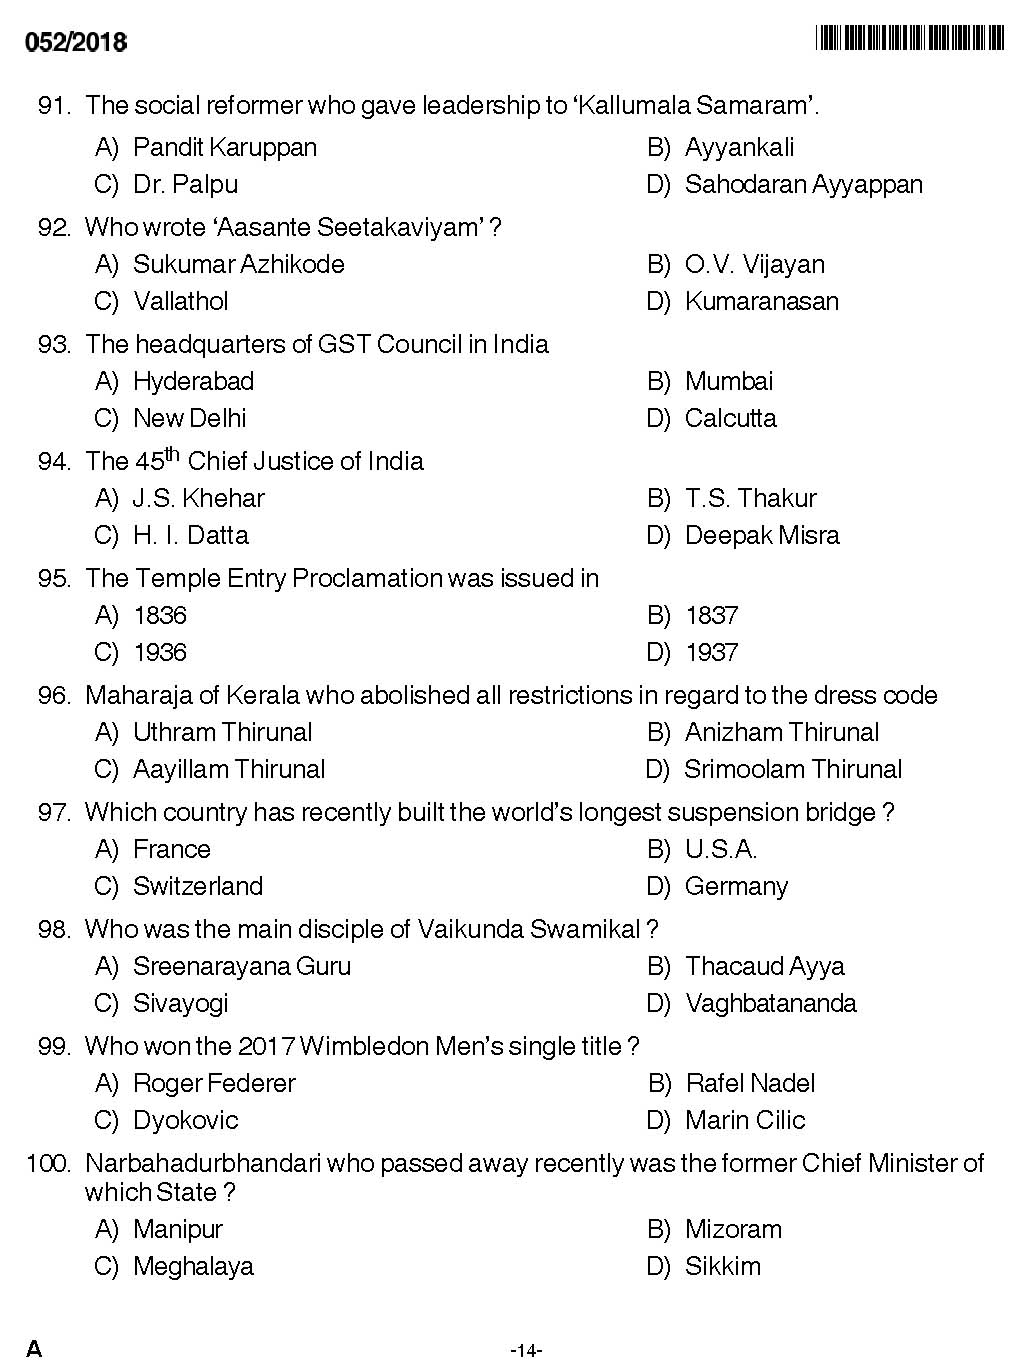 KPSC Higher Secondary School Teacher Exam Question 0522018 12